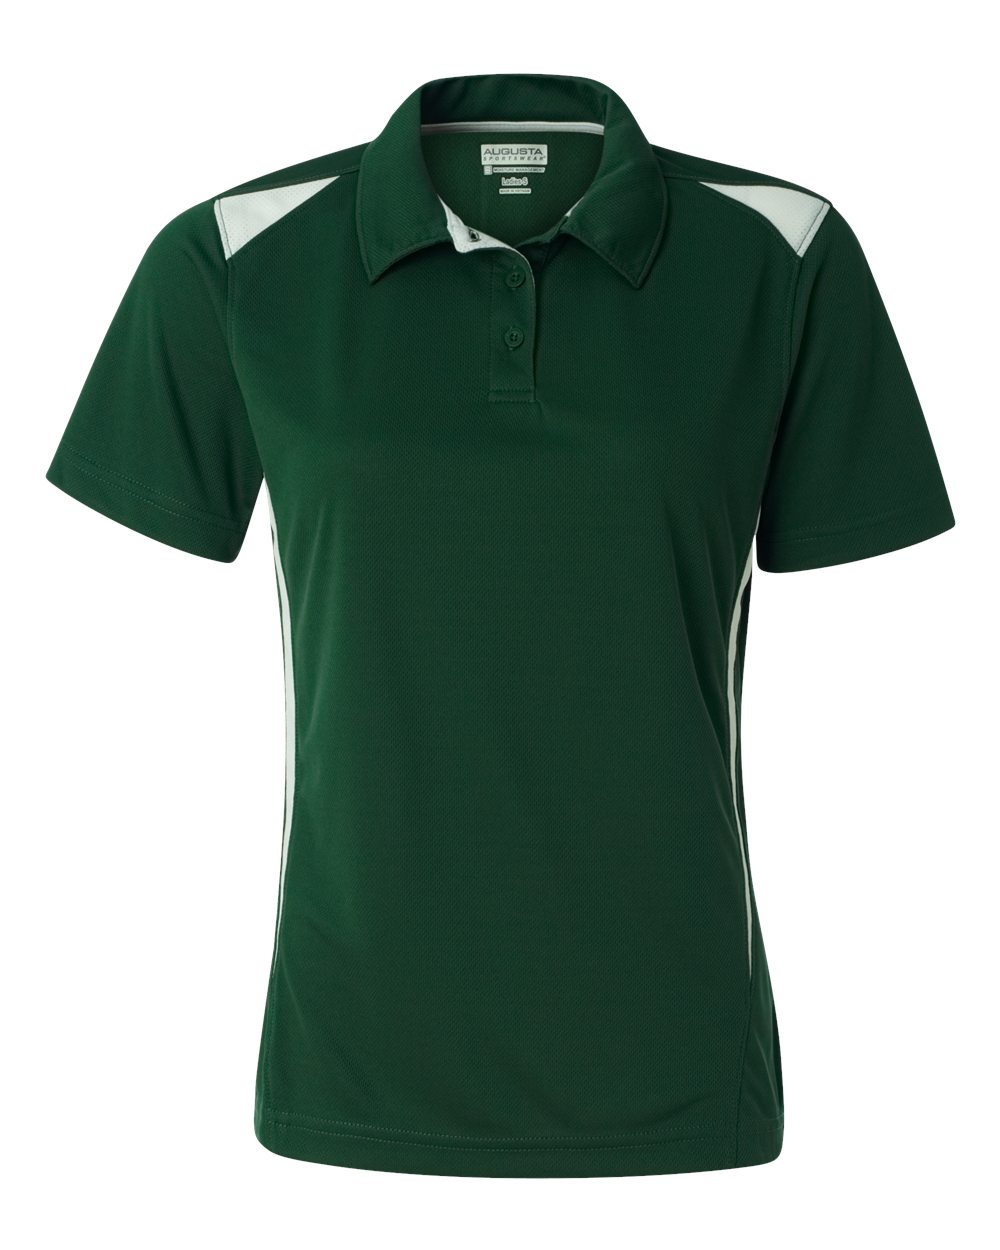 Augusta Sportswear 5013 Ladies' Premier Sport Shirt